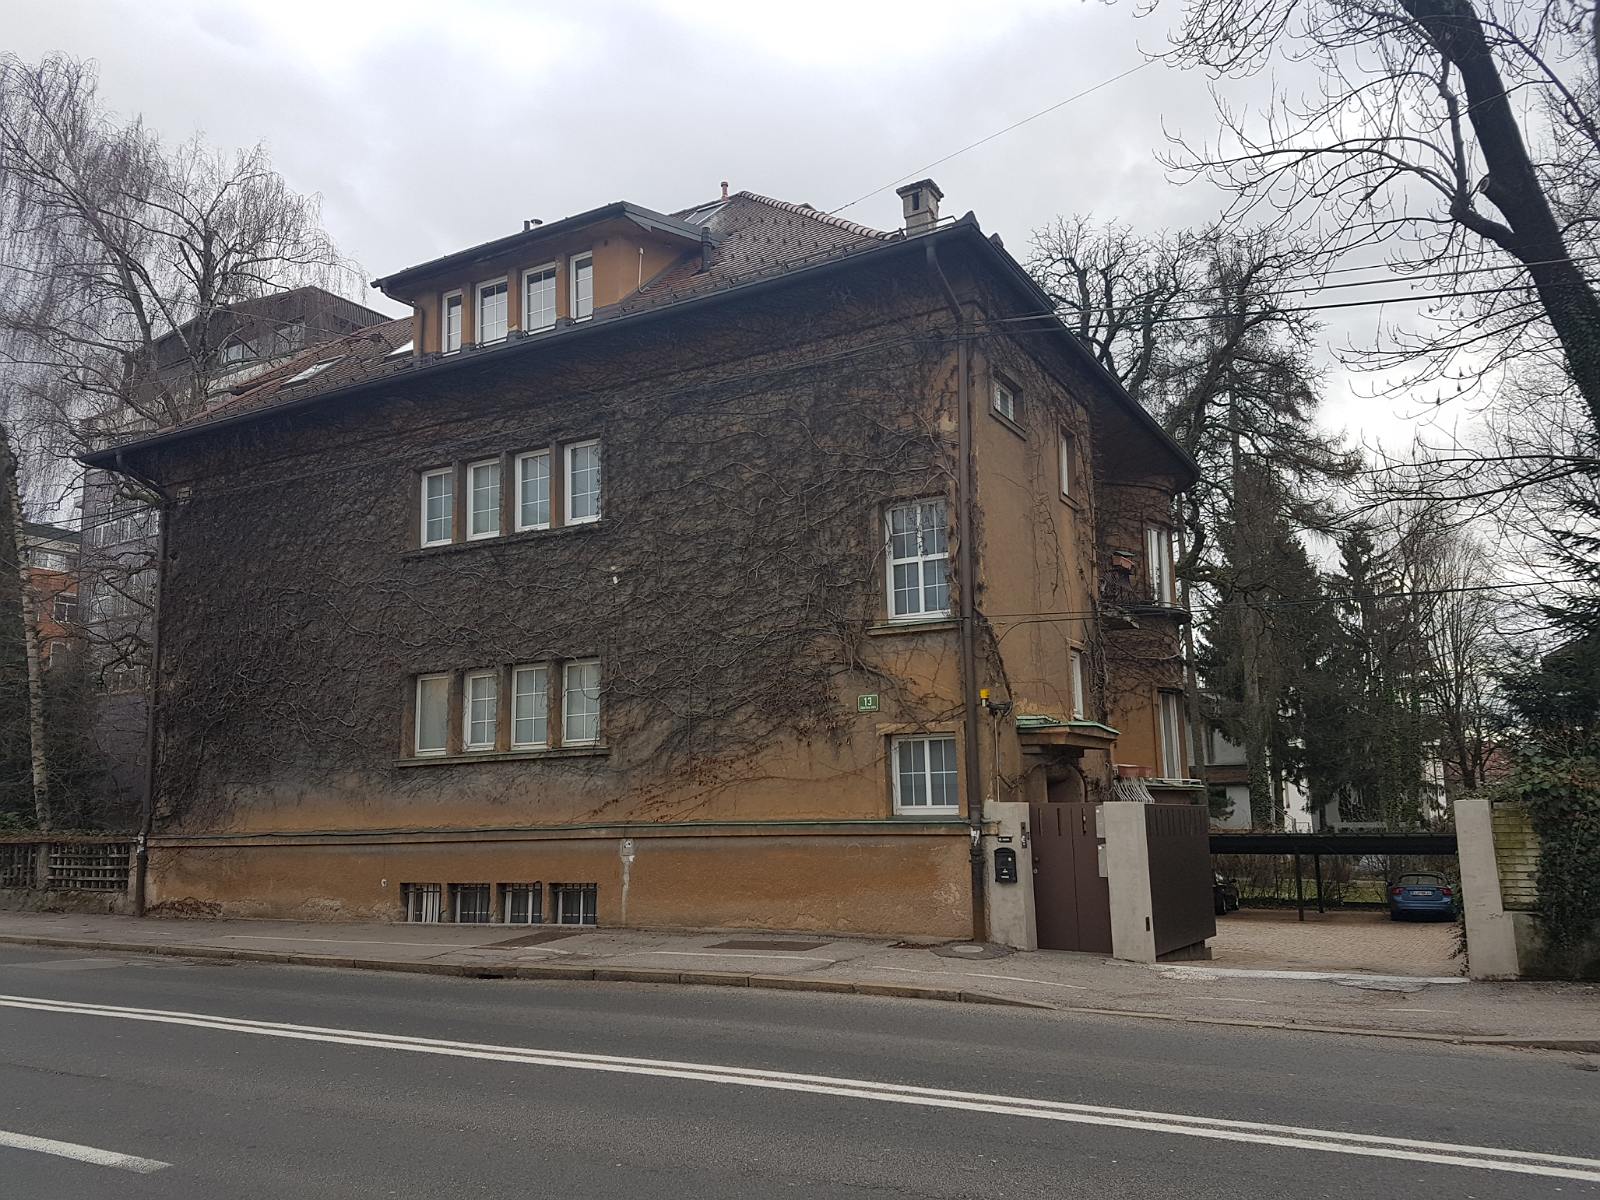 67. Ładnie porośnięty bluszczem dom w Ljubljanie zimową porą.